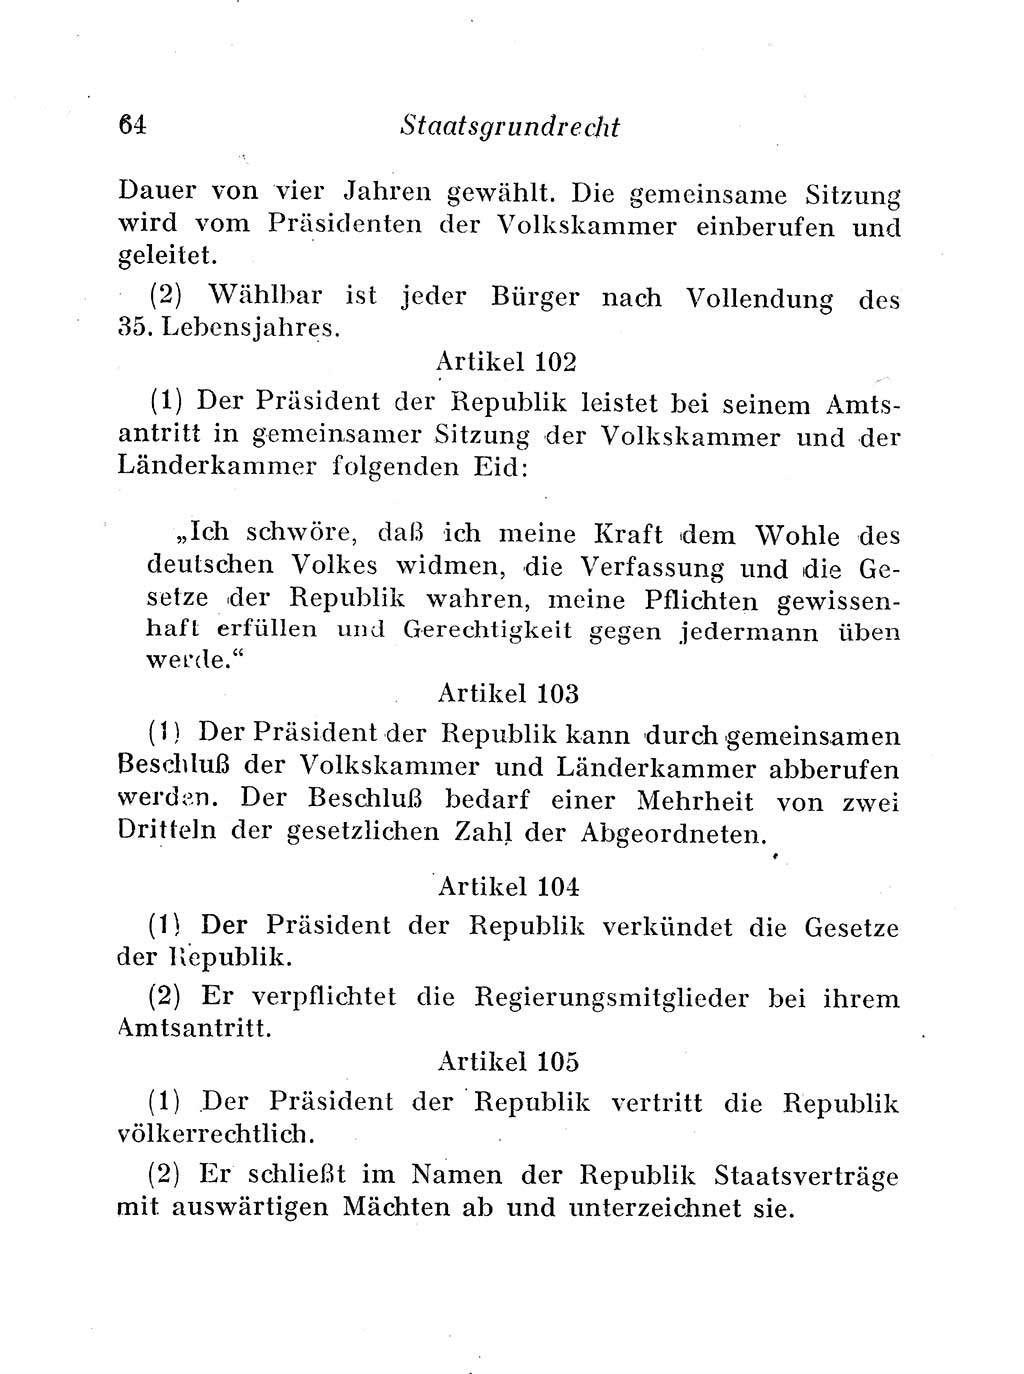 Staats- und verwaltungsrechtliche Gesetze der Deutschen Demokratischen Republik (DDR) 1958, Seite 64 (StVerwR Ges. DDR 1958, S. 64)